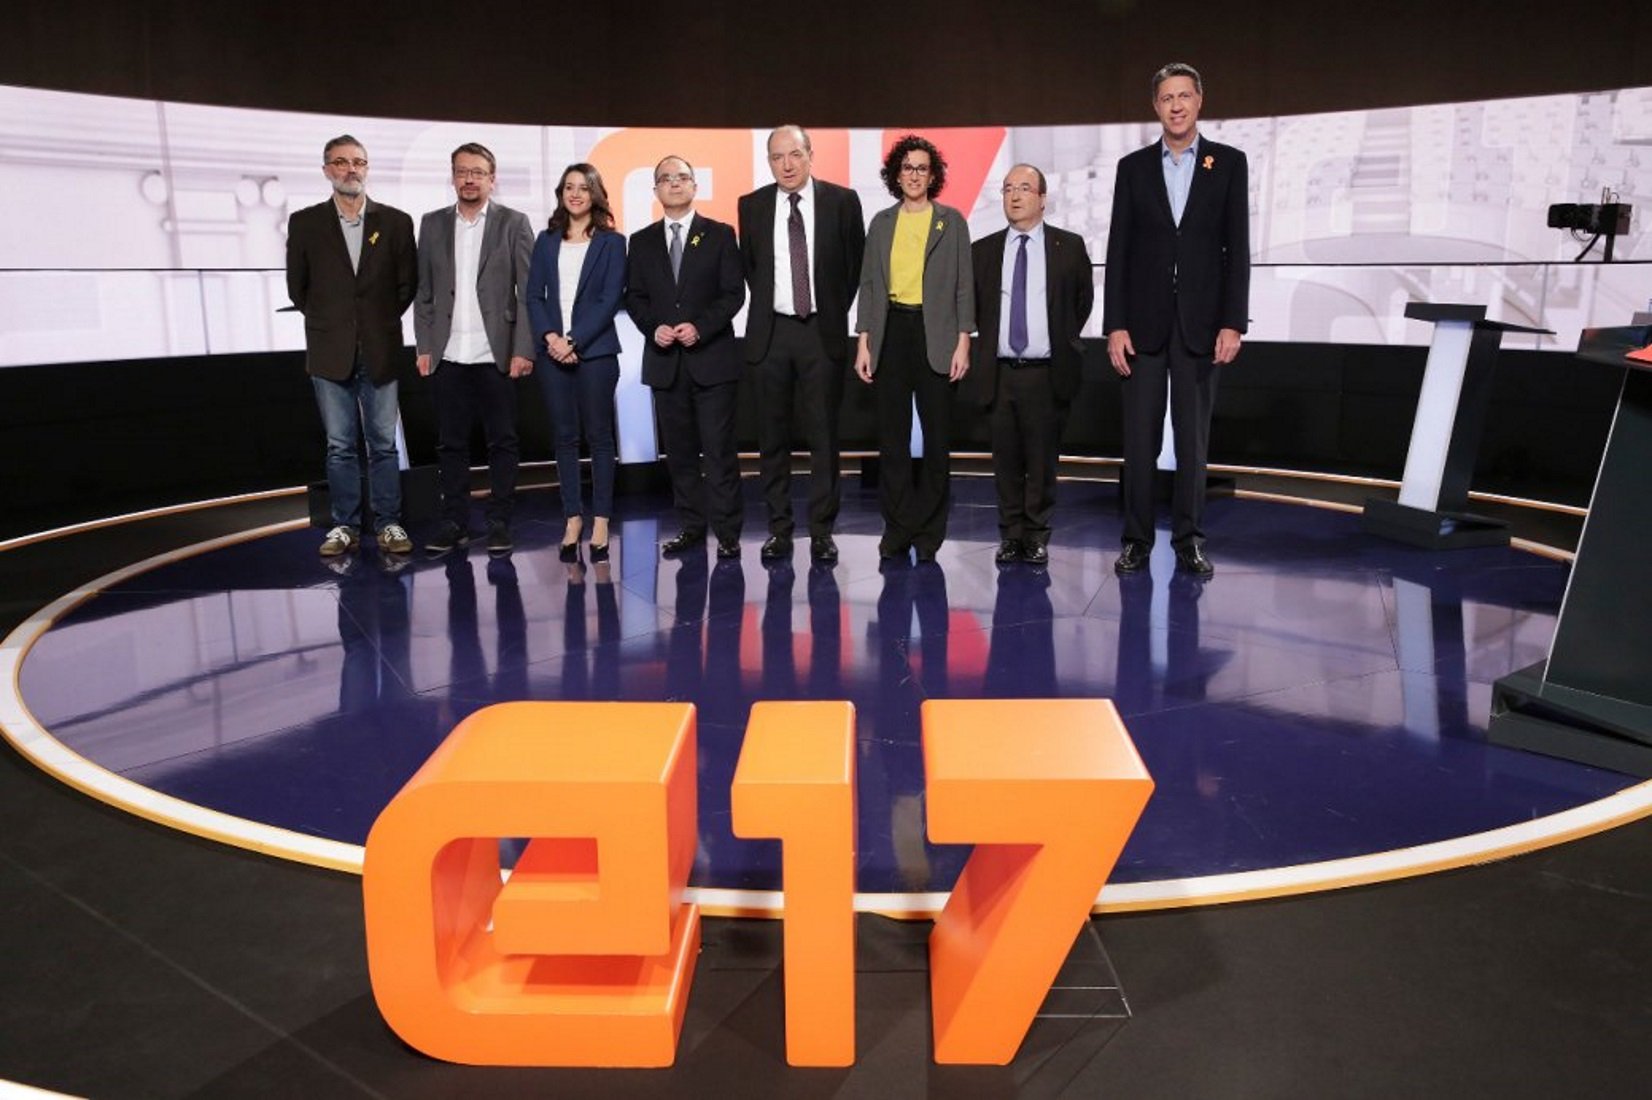 El debate electoral de TV3 no tiene oposición